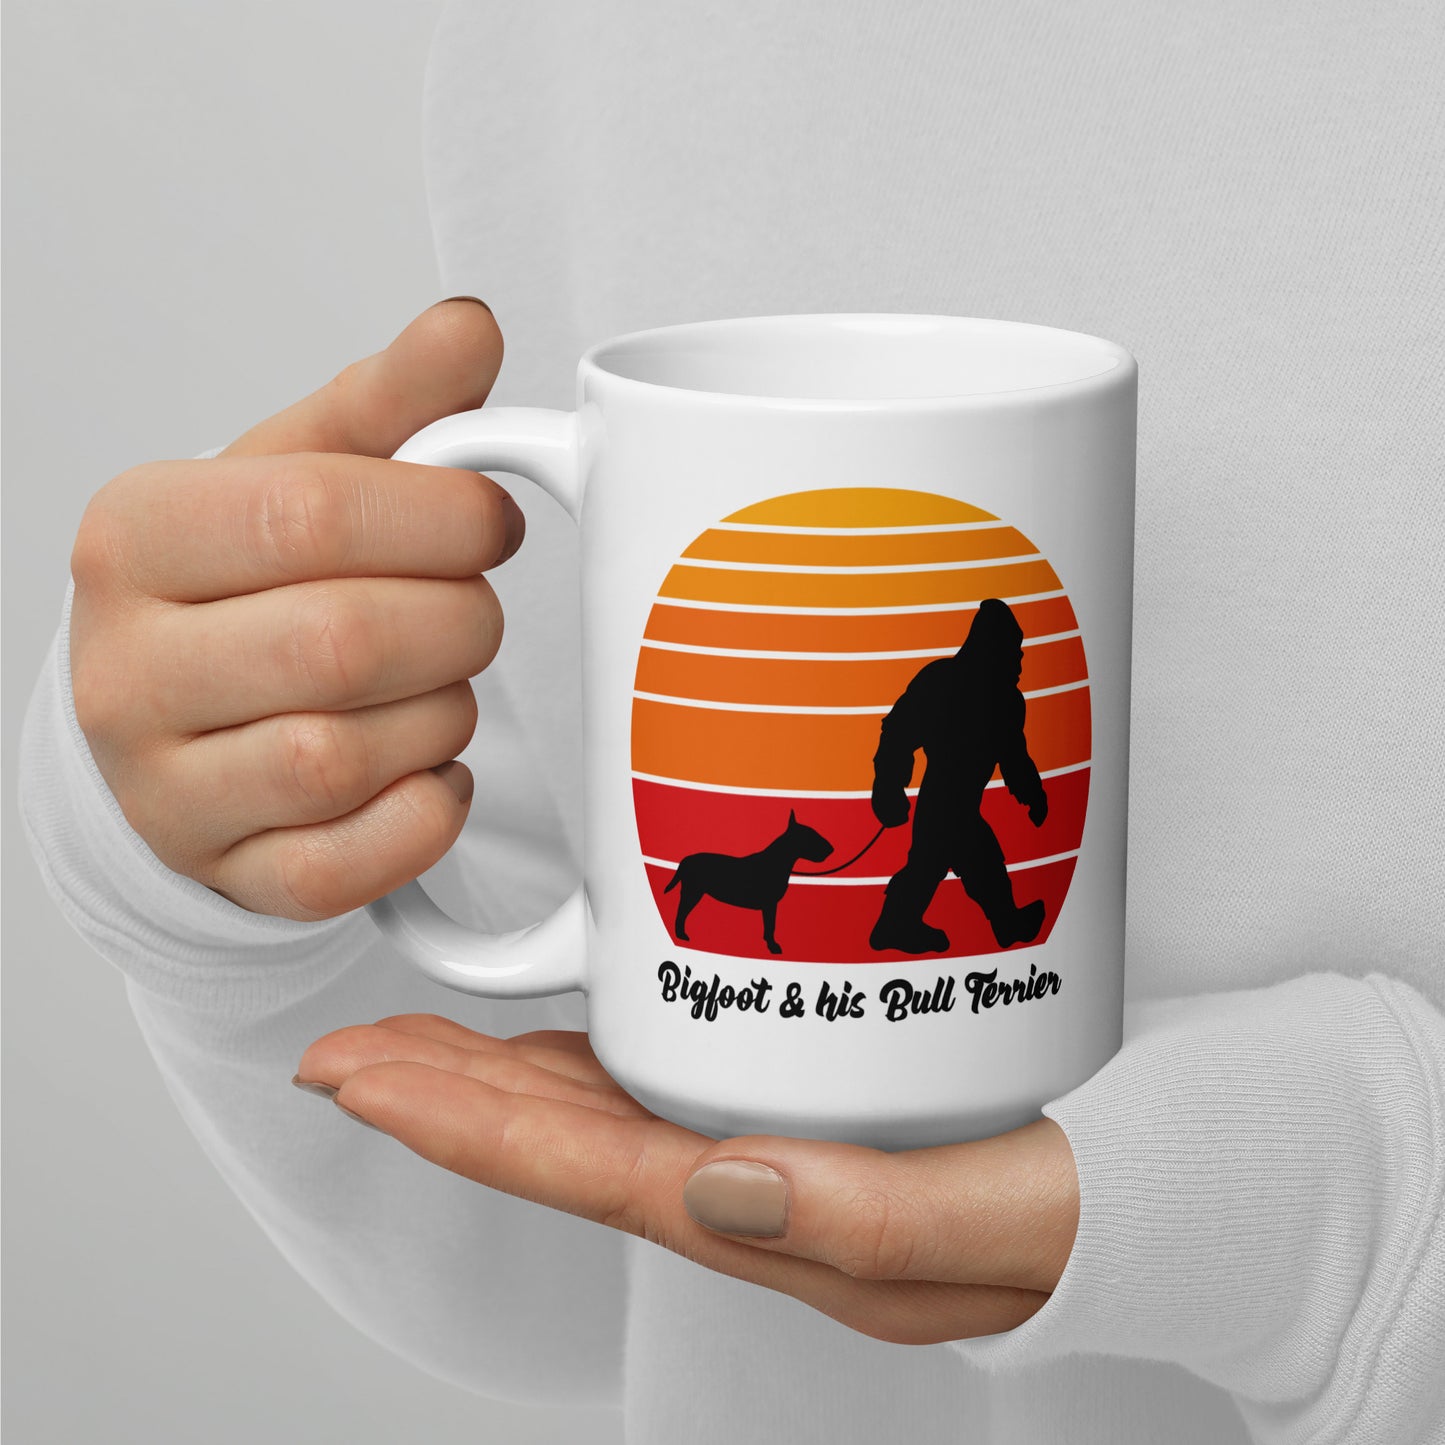 Bigfoot and his Bull Terrier mug by Dog Artistry.